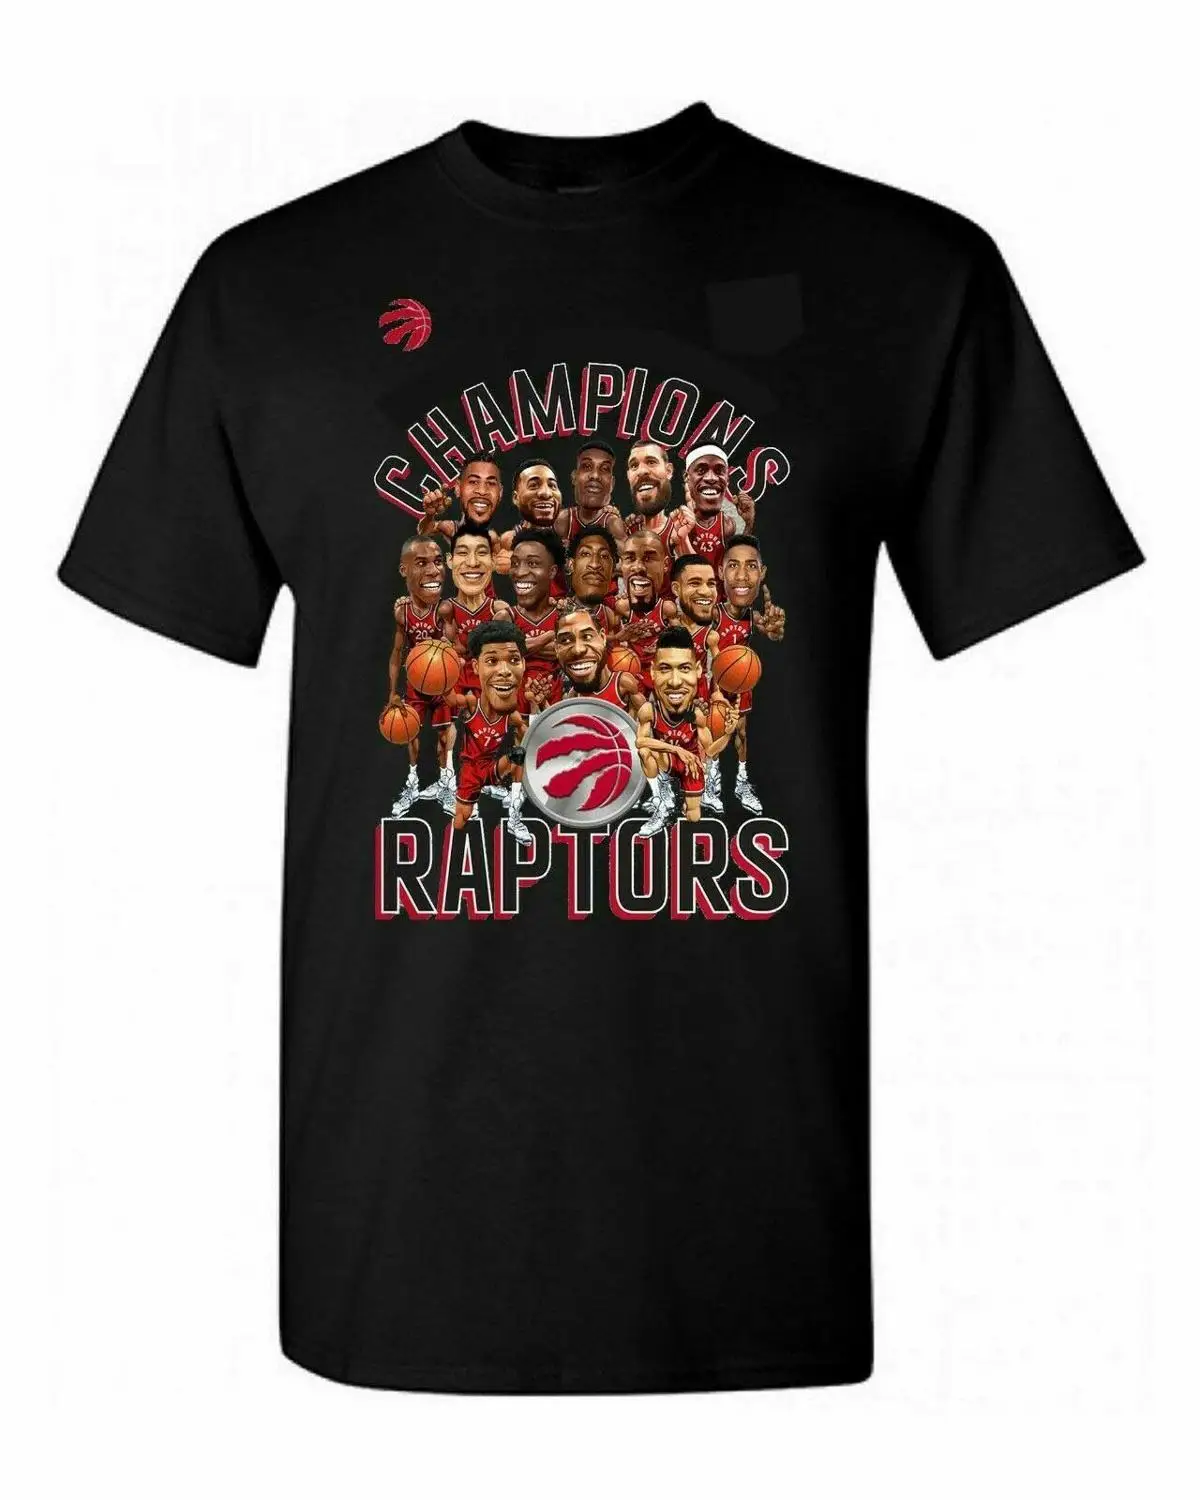 Футболка Toronto Raptors FINALS THE CHAMPIONS SQUAD-футболка, размер S-3XL, полный цвет, высокое качество, новинка, брендовая мужская футболка